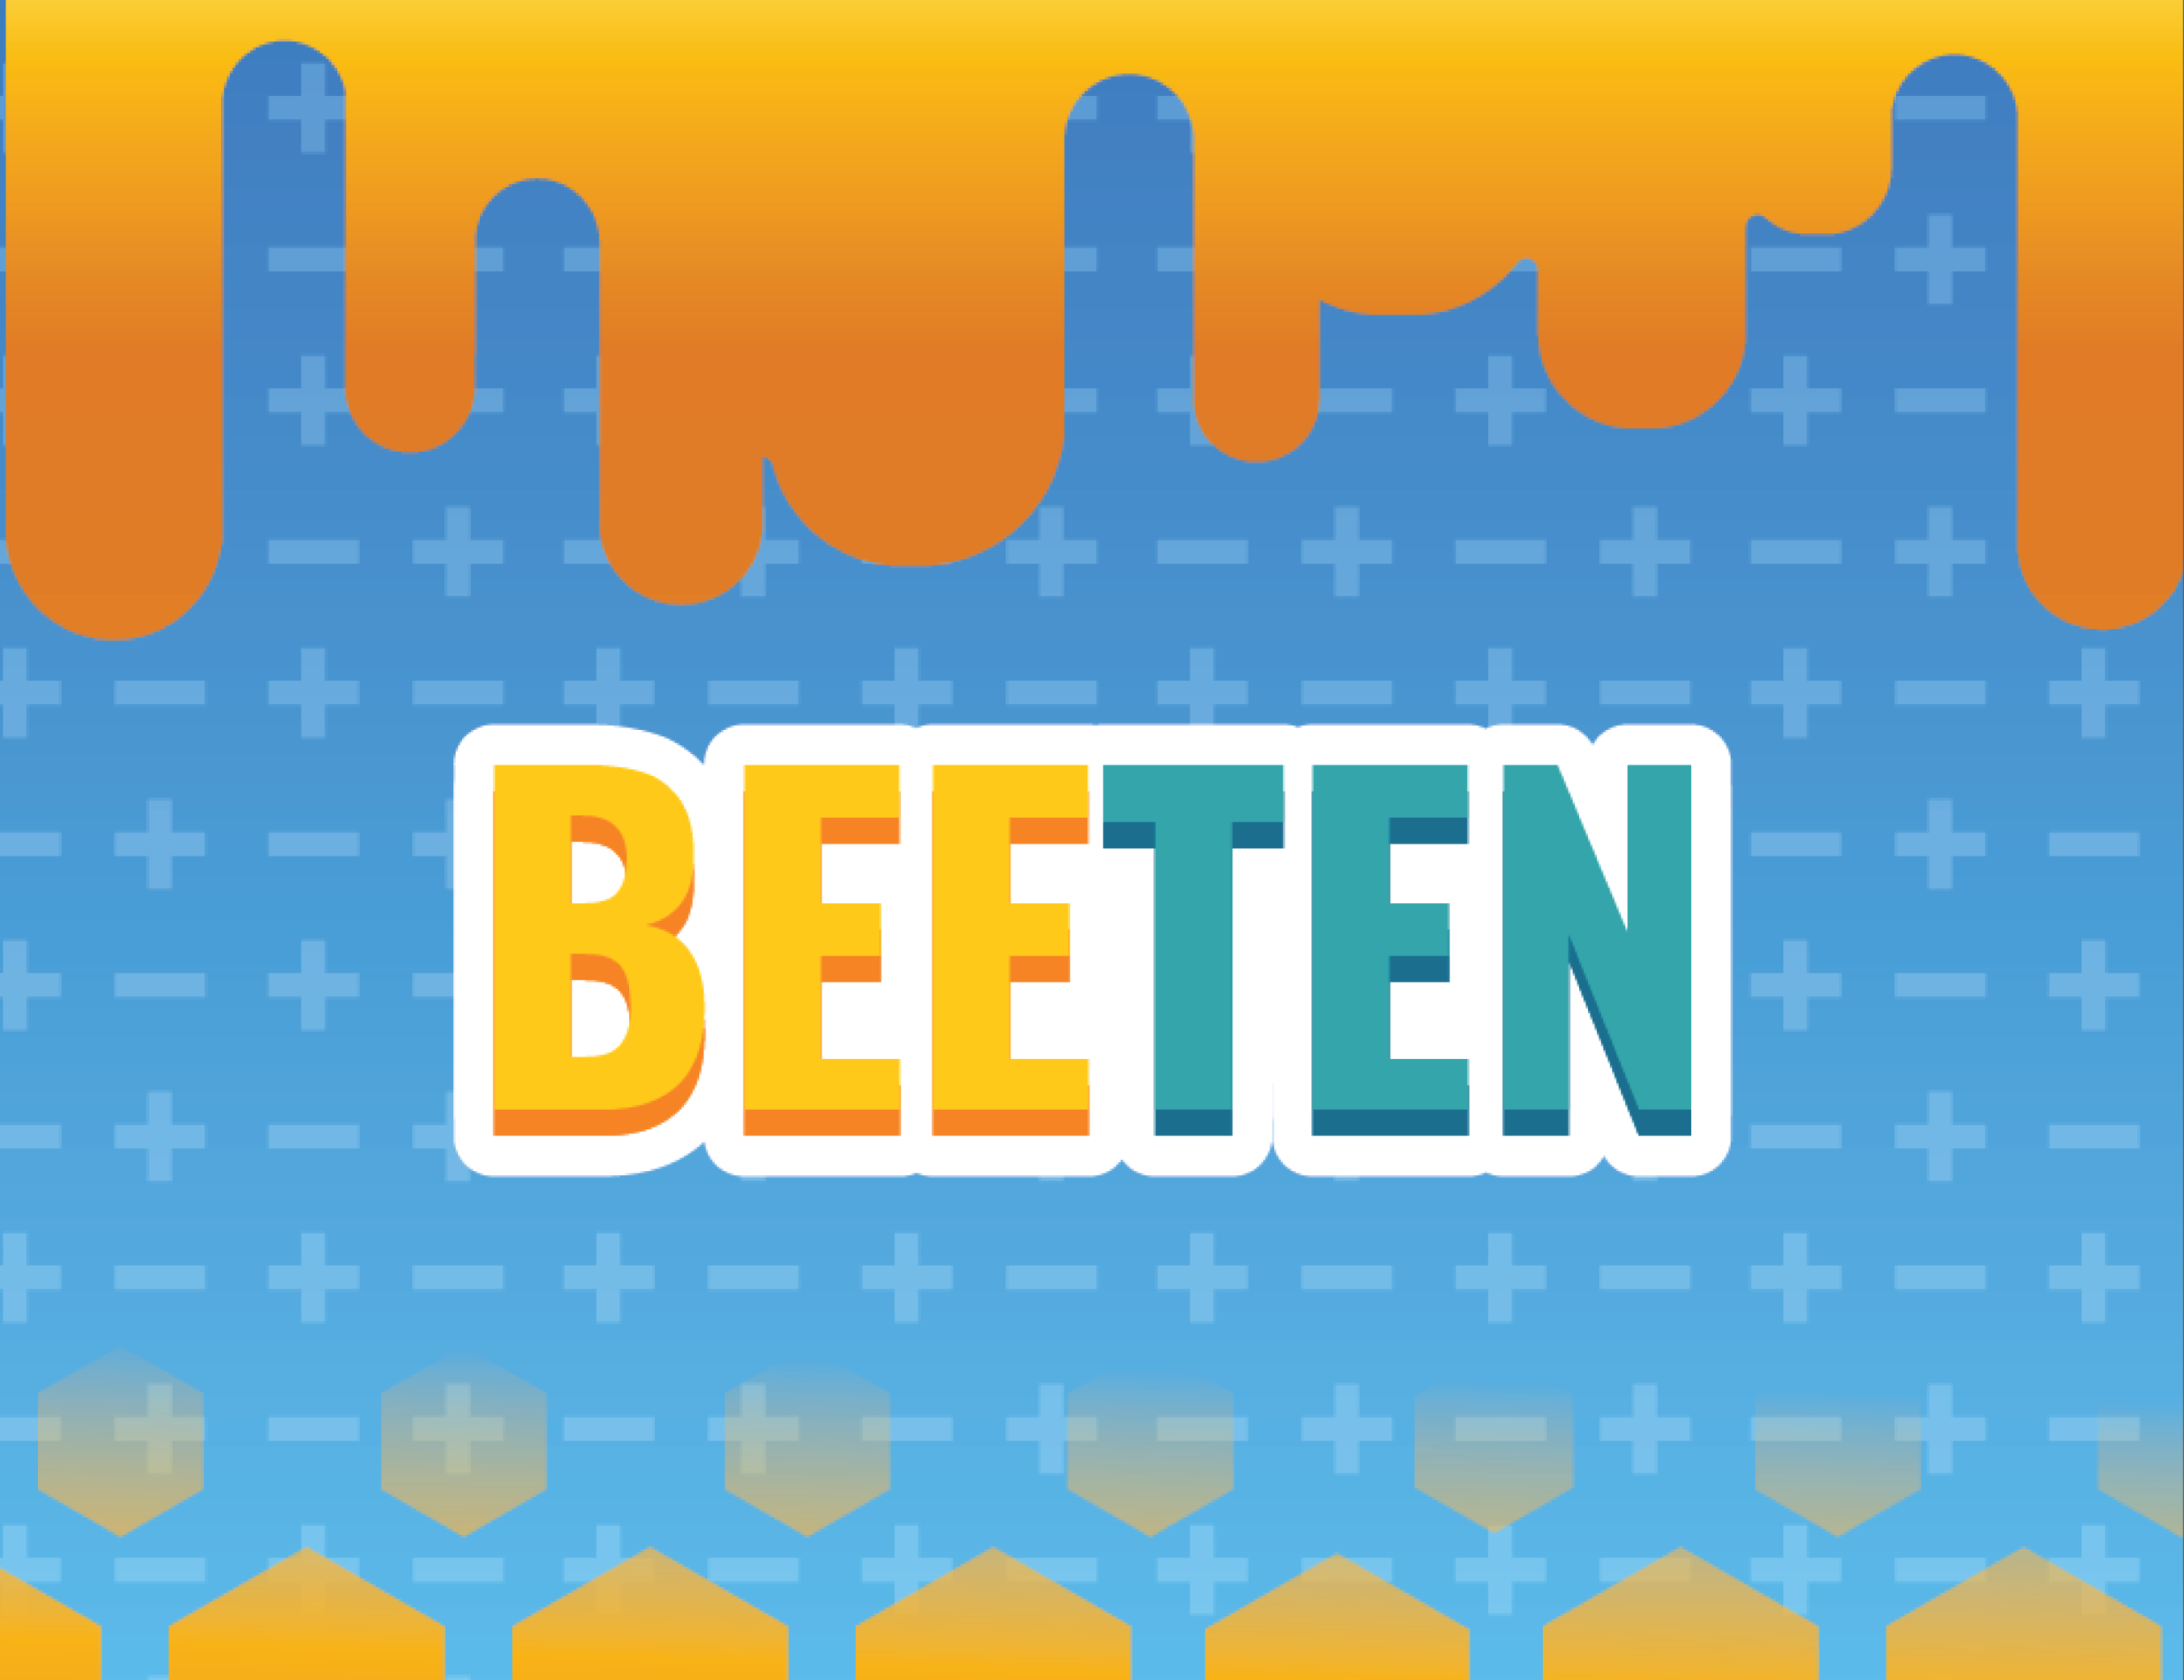 Beeten - 2019